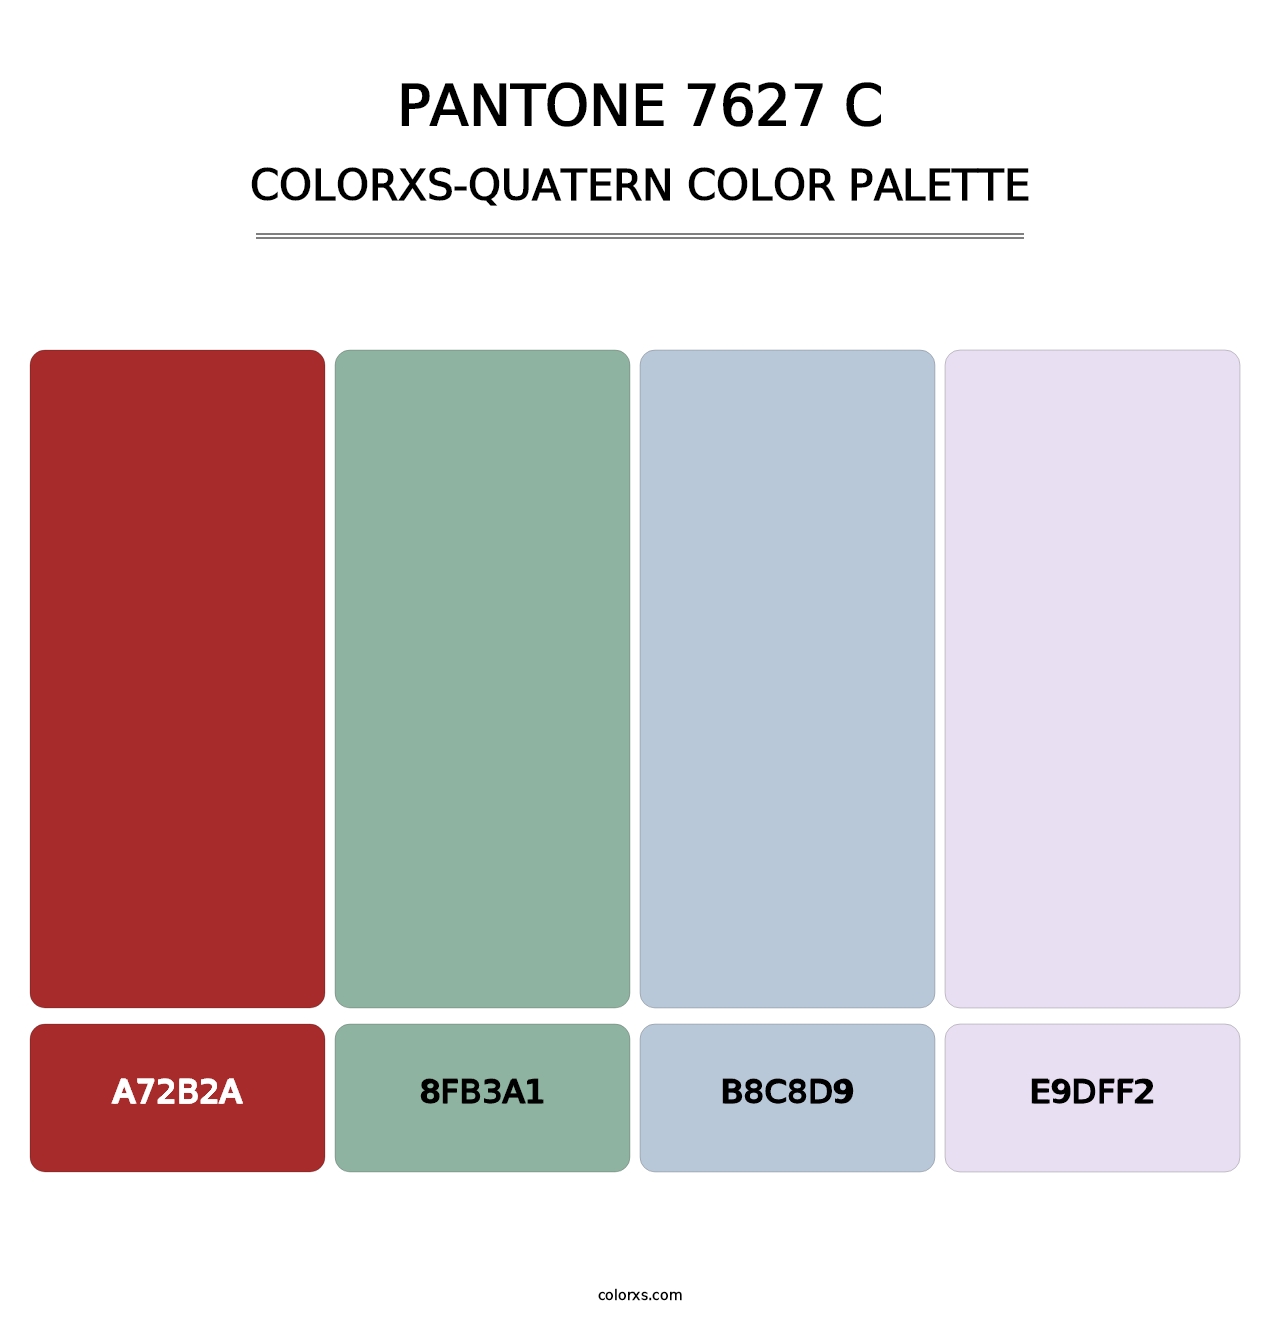 PANTONE 7627 C - Colorxs Quatern Palette